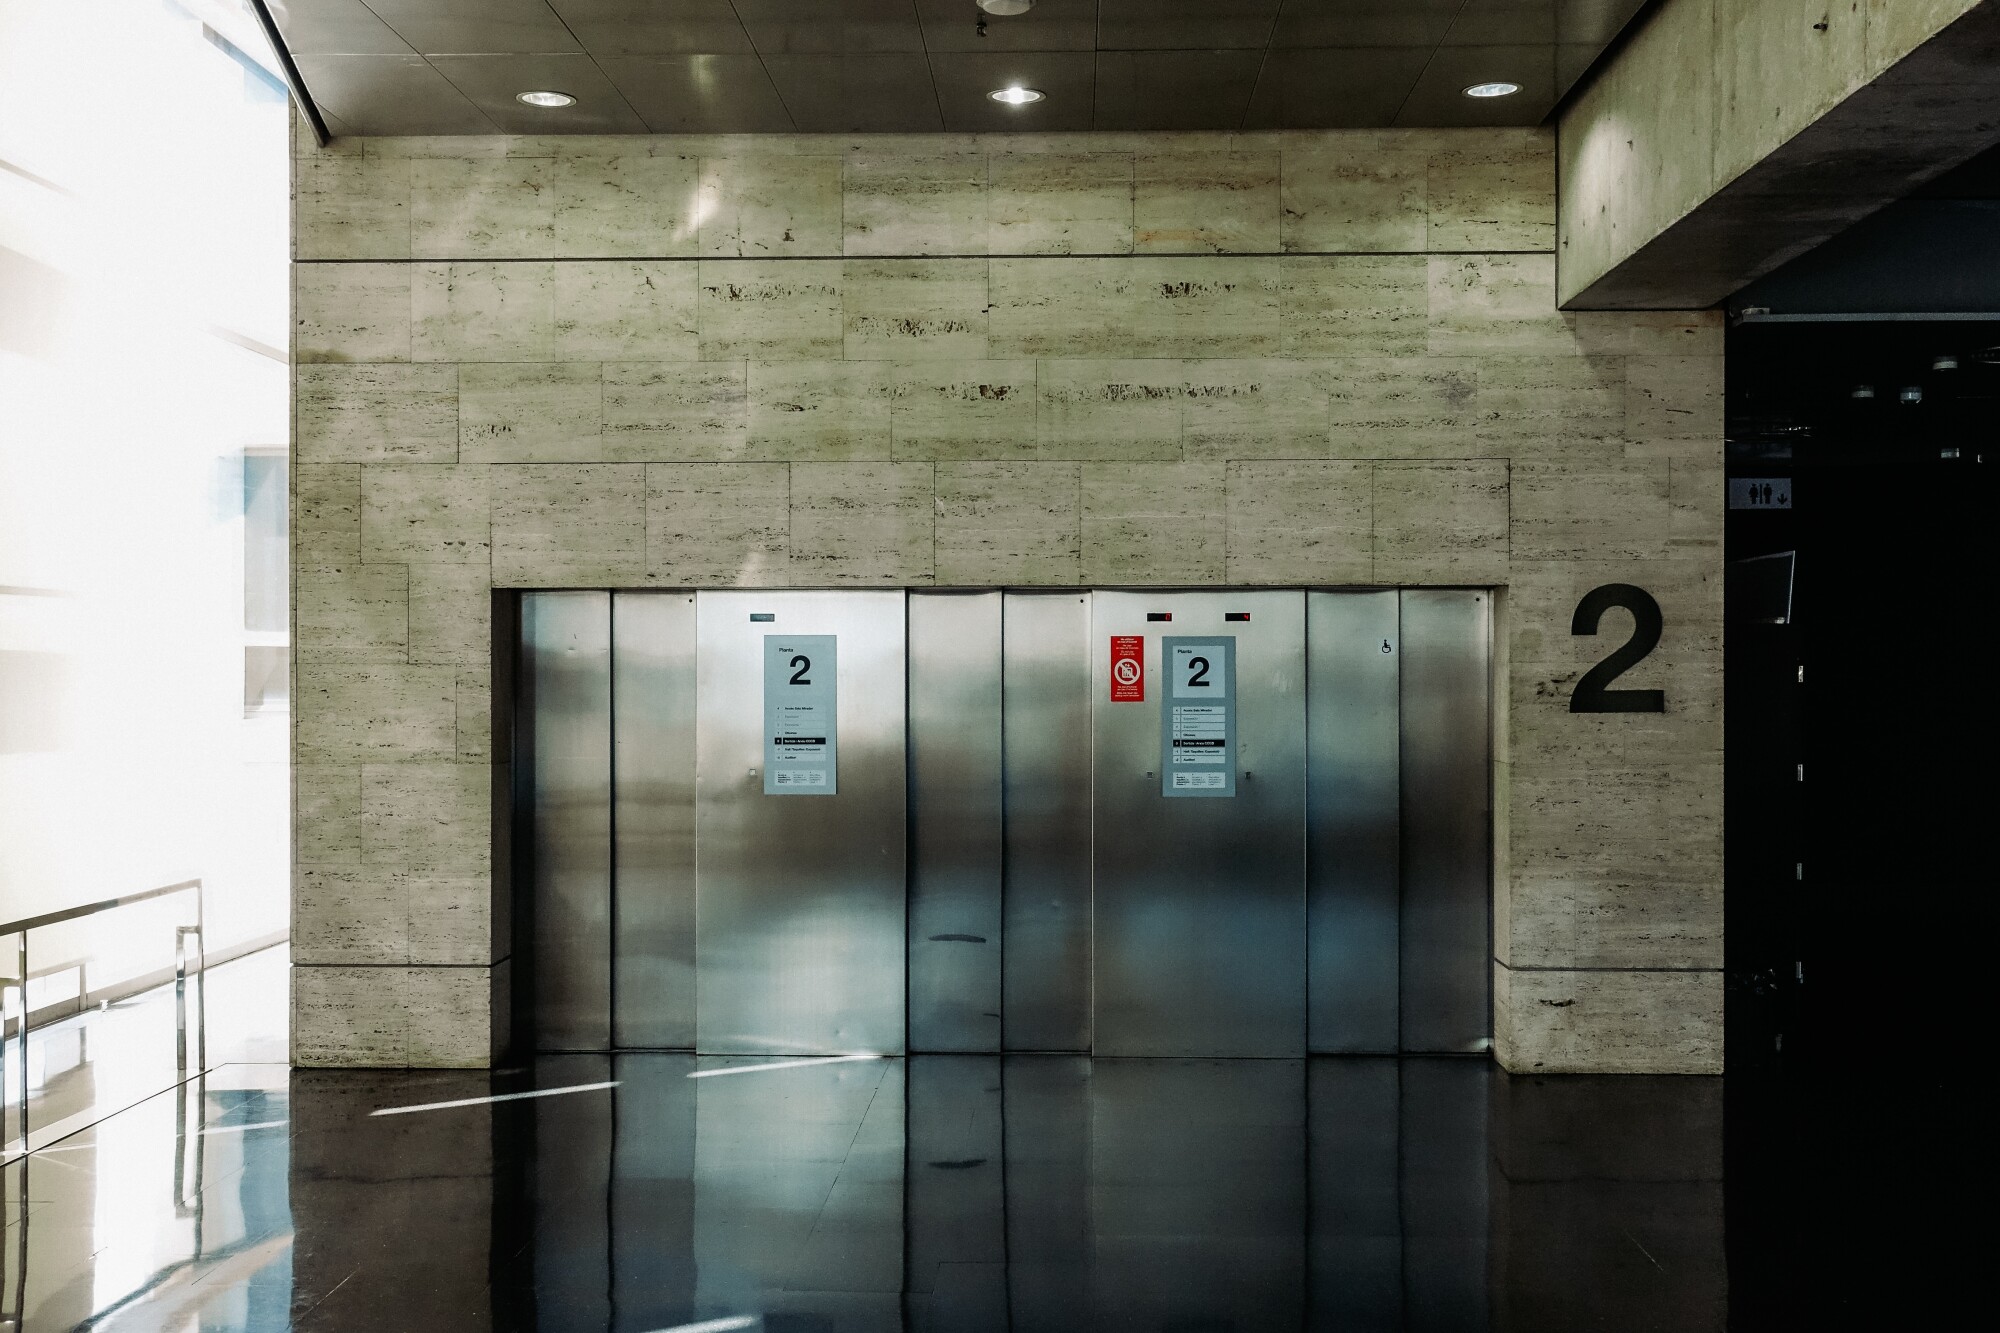 types of elevators